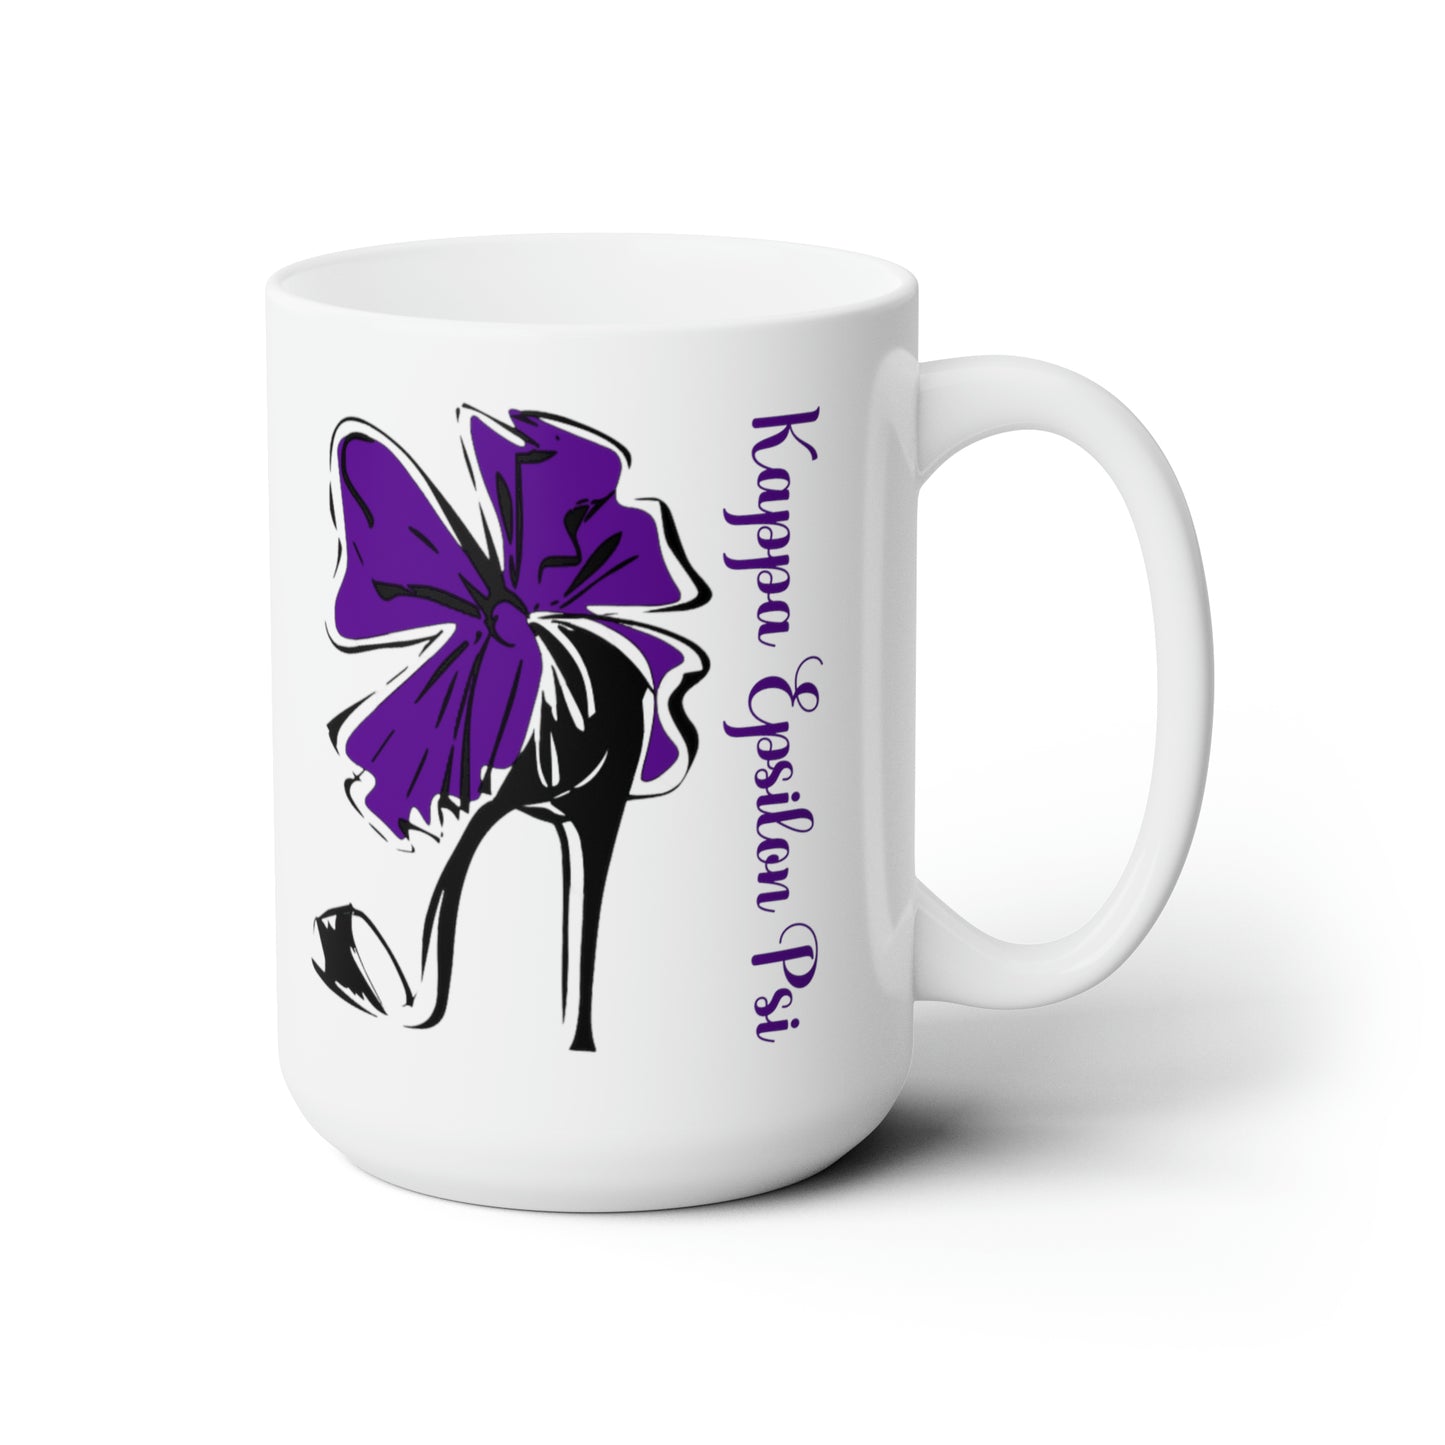 Mug ~ Kappa Epsilon Psi (ΚΕΨ) "High Heel" (Purple) Ceramic Mug 15oz